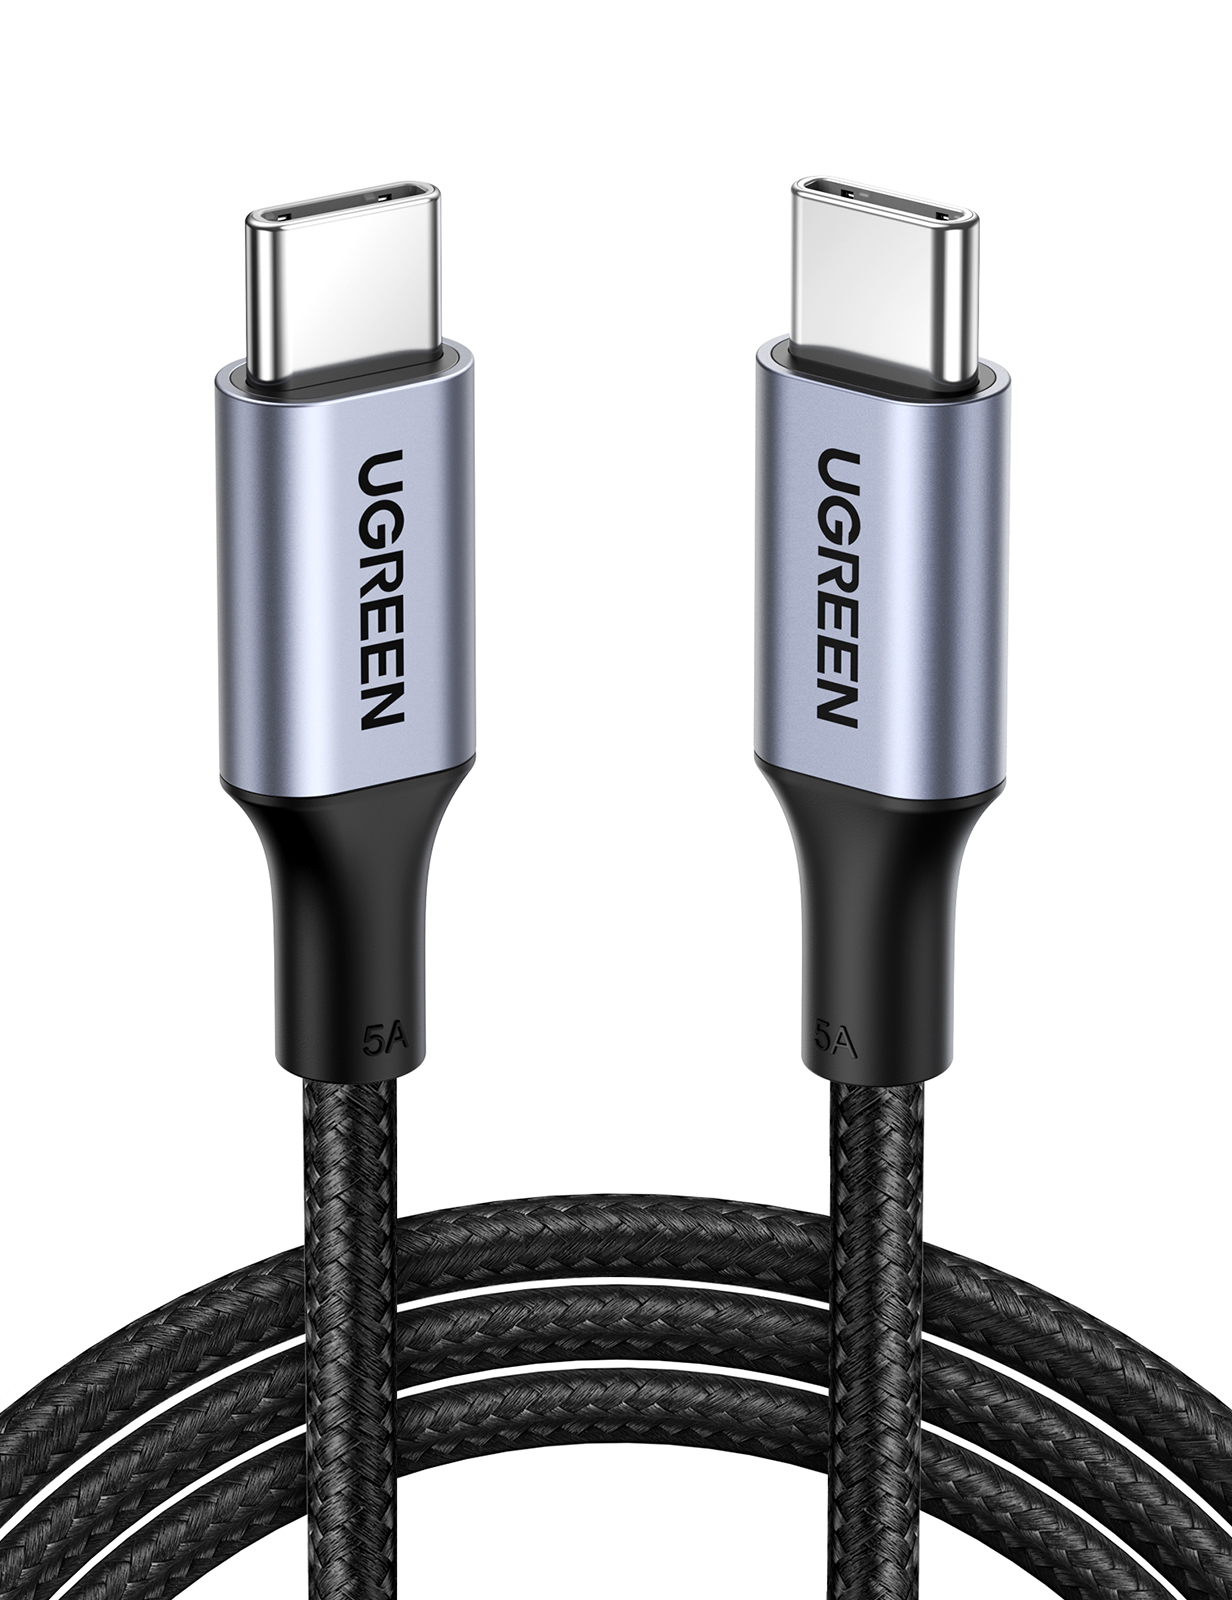 Кабель uGreen US316 (70428) USB-C 2.0 to USB-C 2.0 5A Data Cable 1.5 м черный